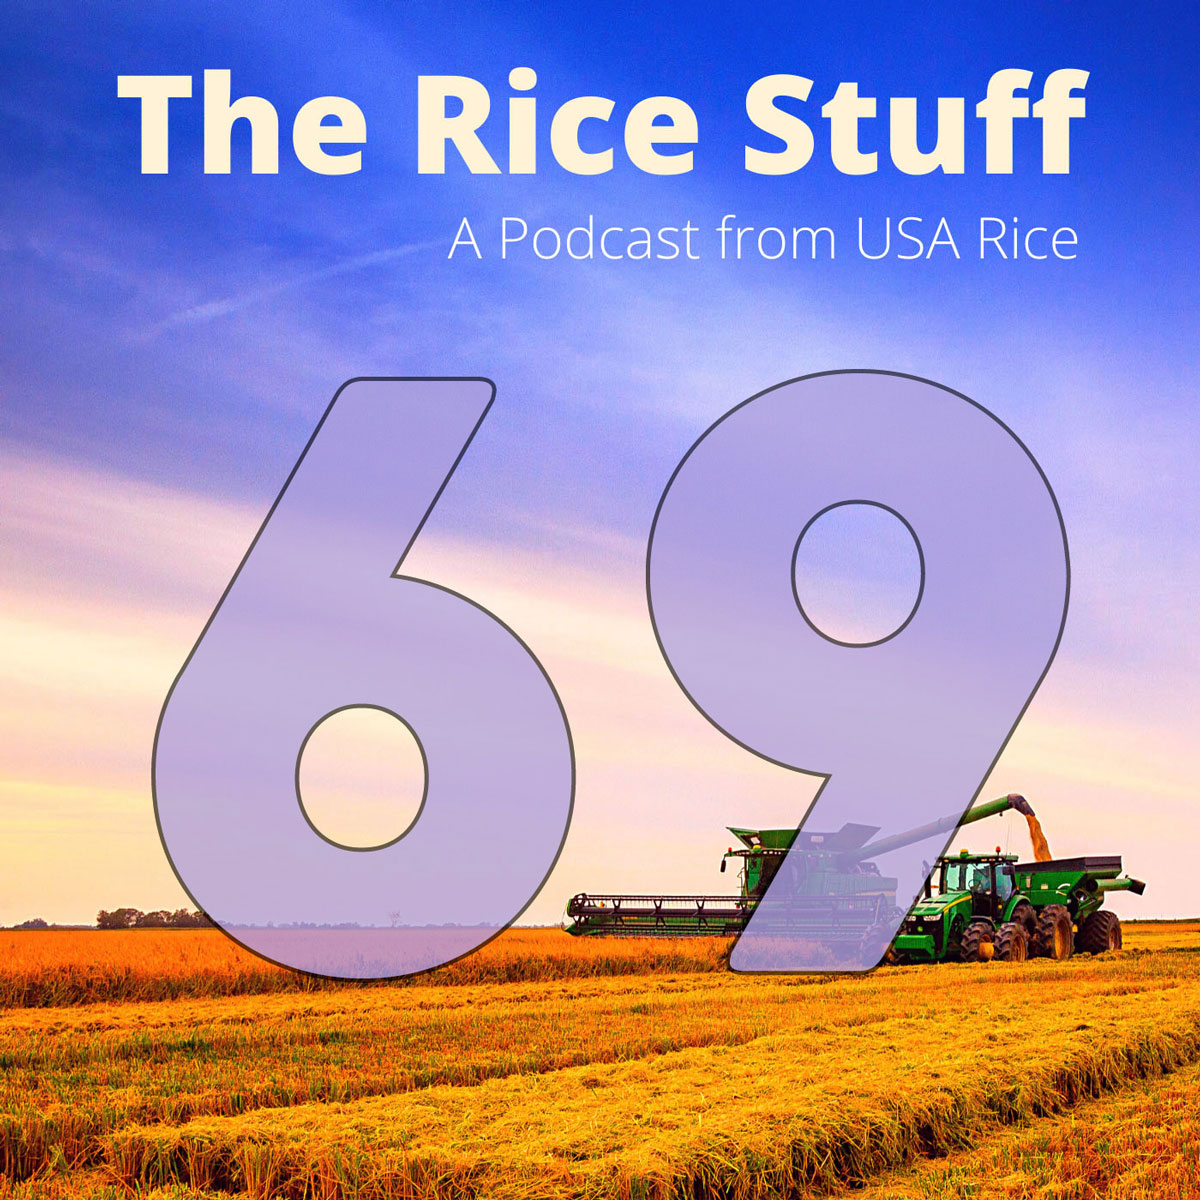 通过”稻米之事 “博客了解植物遗传学和育种 pic